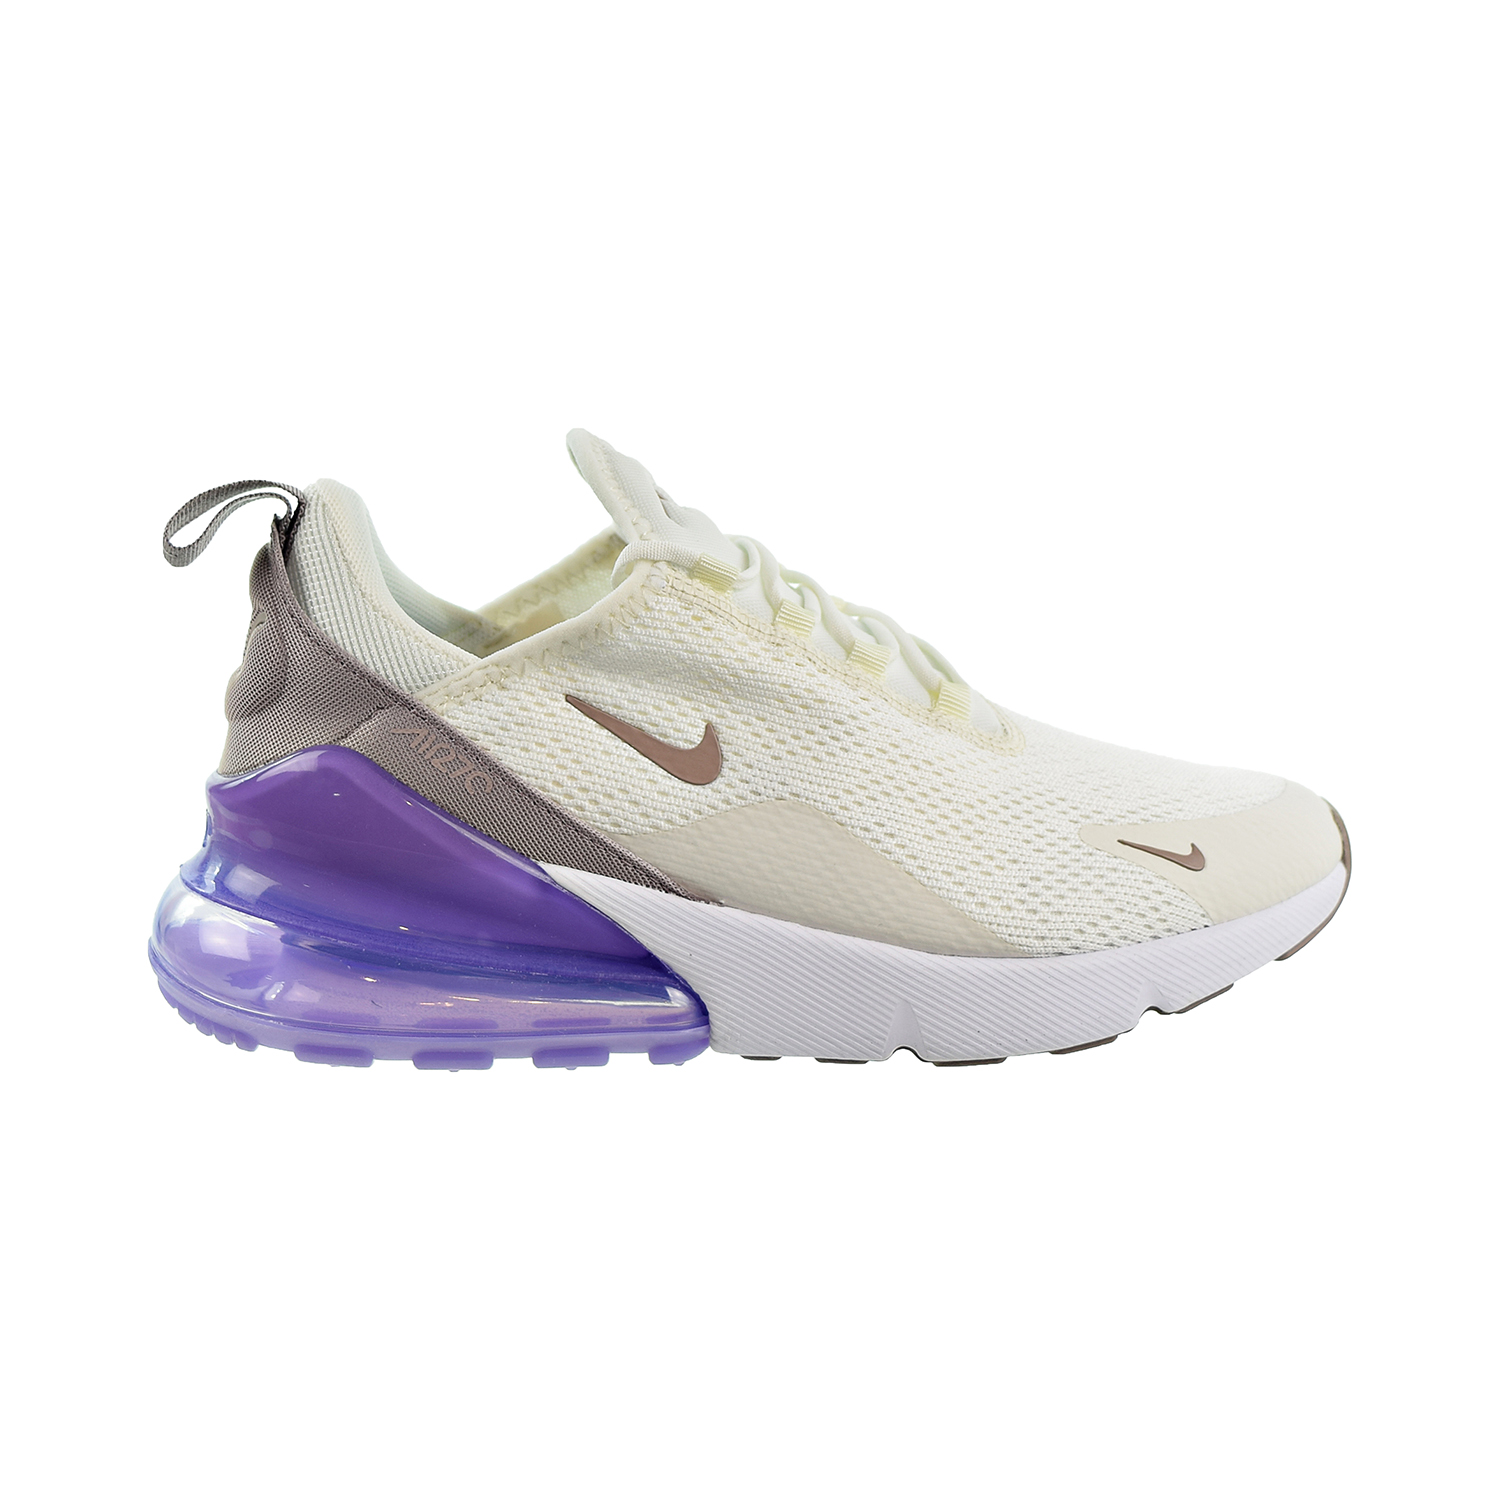 Nike Air Max purple air max 270 270 Womens Shoes Sail/Pumice/Space Purple/White